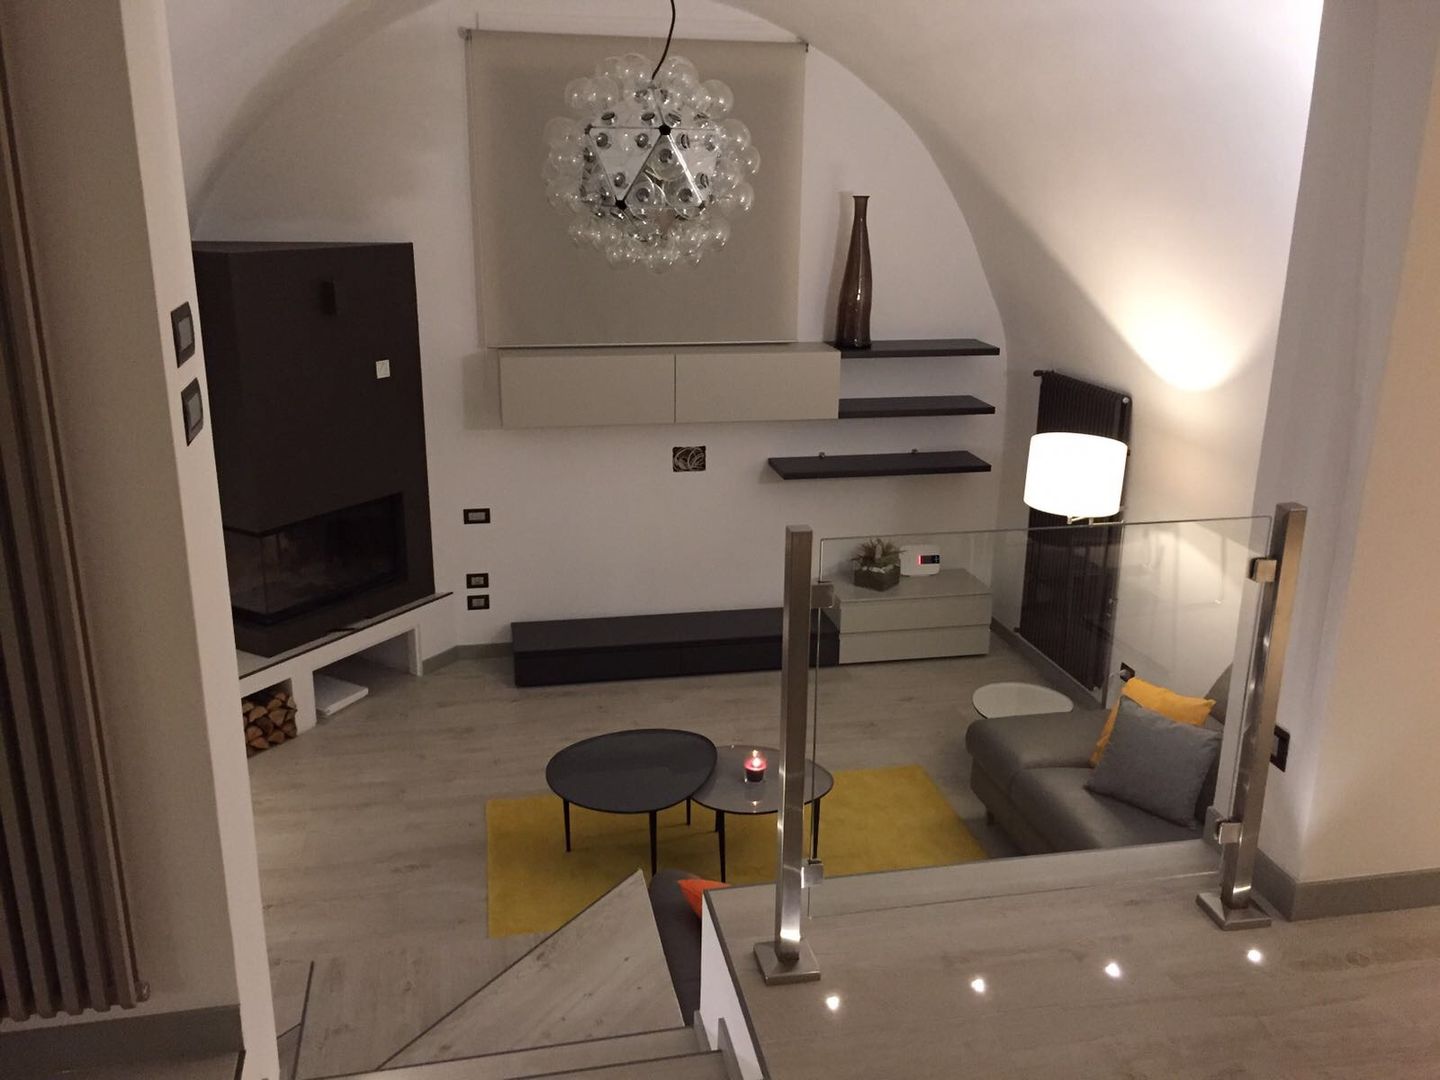 Appartamento in Turi (Bari) - Moderno su due livelli, SILVIA ZACCARO ARCHITETTO SILVIA ZACCARO ARCHITETTO Moderne woonkamers